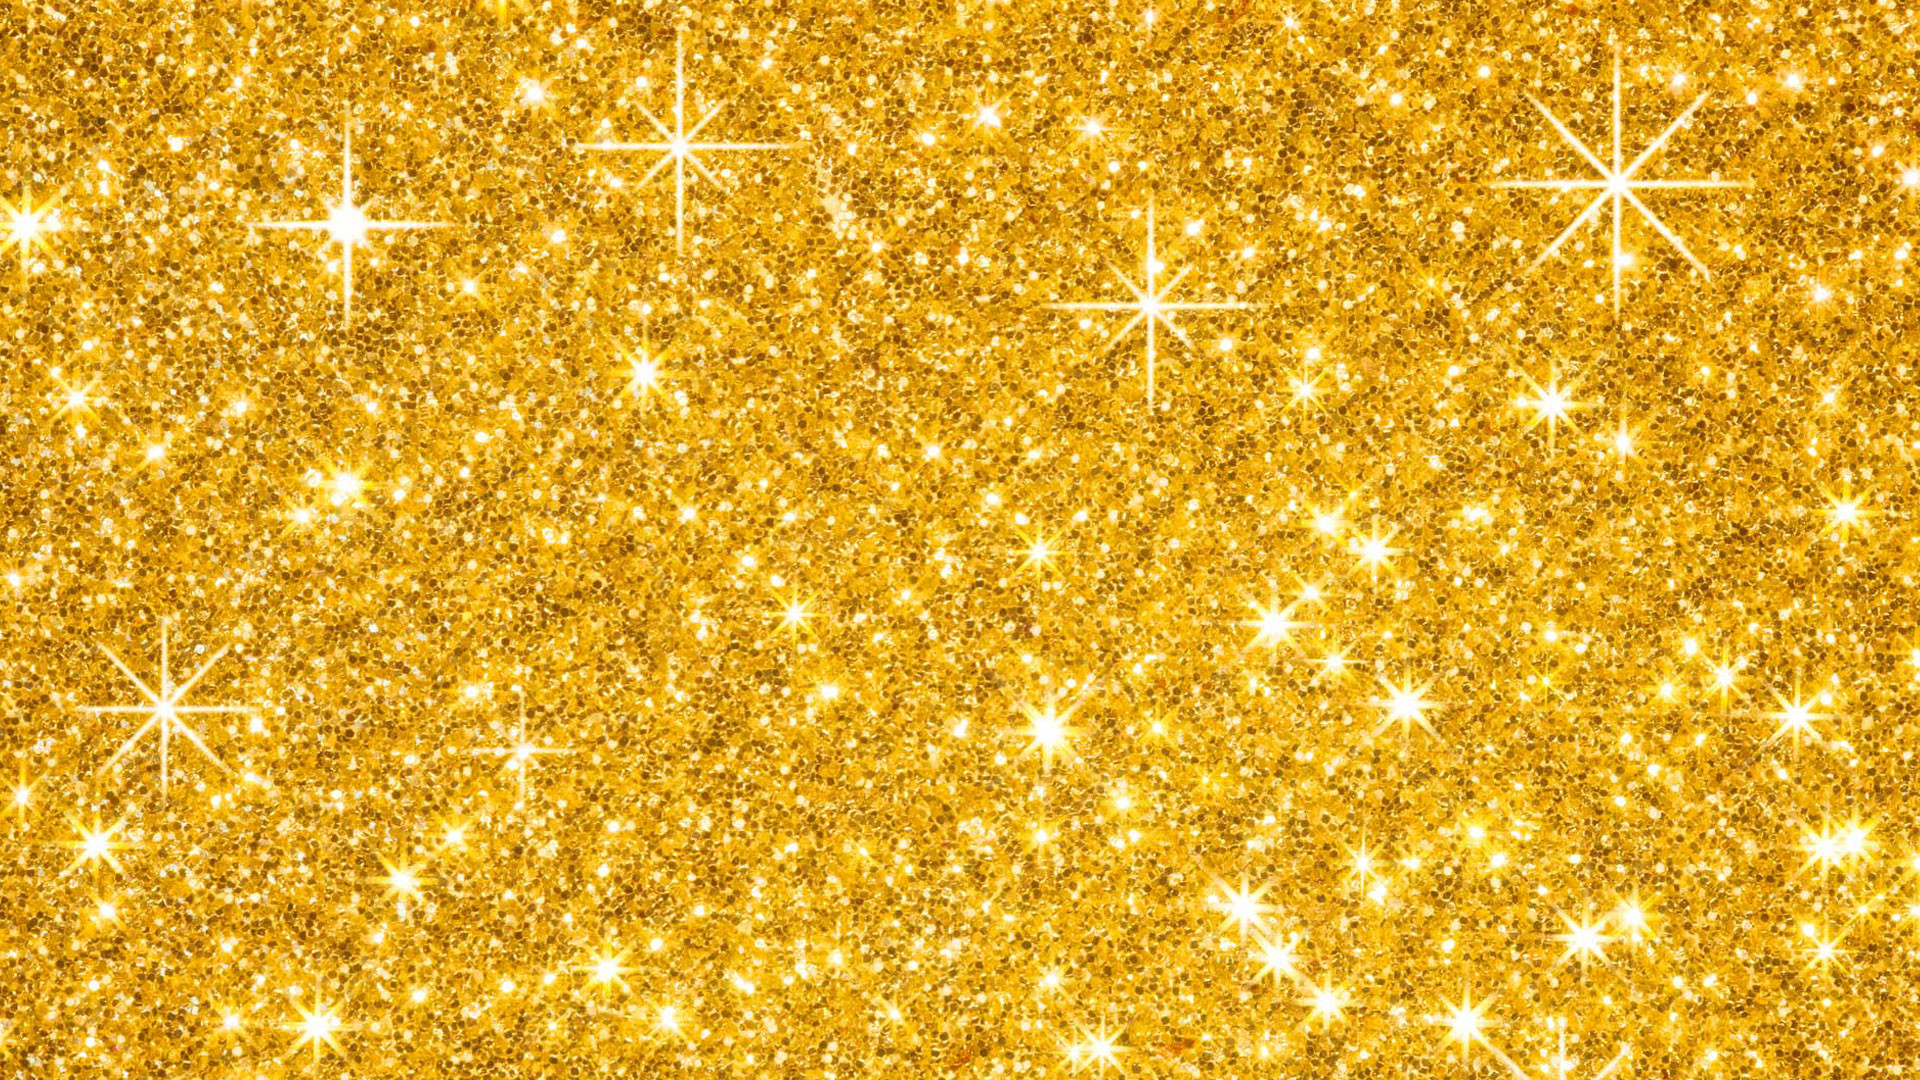 1920x1080 Light Gold Glitter Background wallpaper. | HD Wallpapers | Pinterest | Glitter  wallpaper, Glitter background and Wallpaper